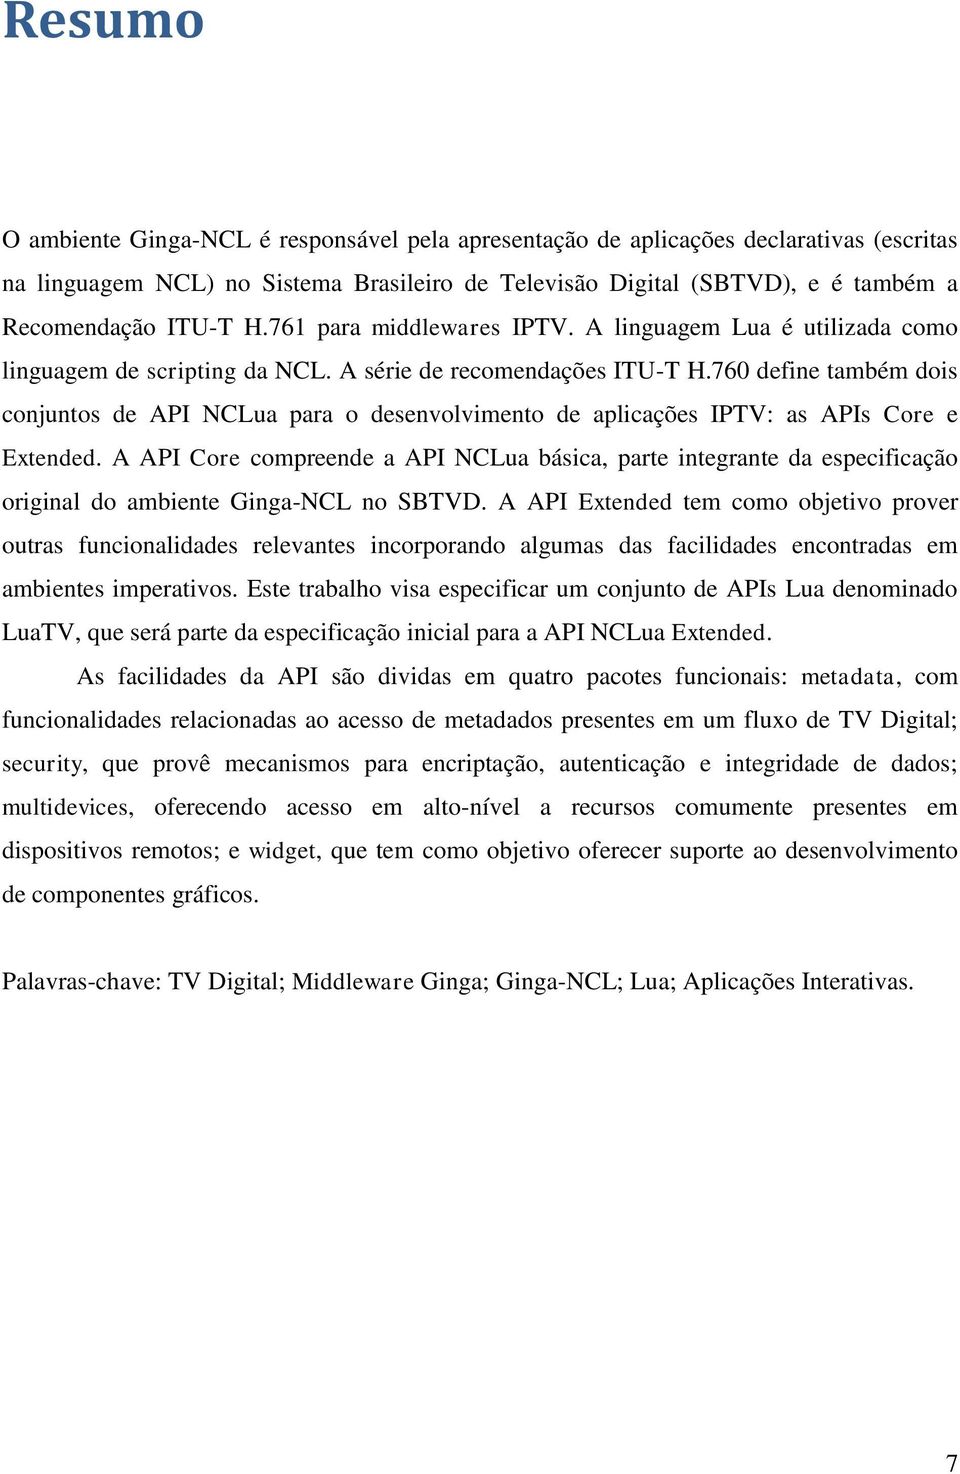 760 define também dois conjuntos de API NCLua para o desenvolvimento de aplicações IPTV: as APIs Core e Extended.